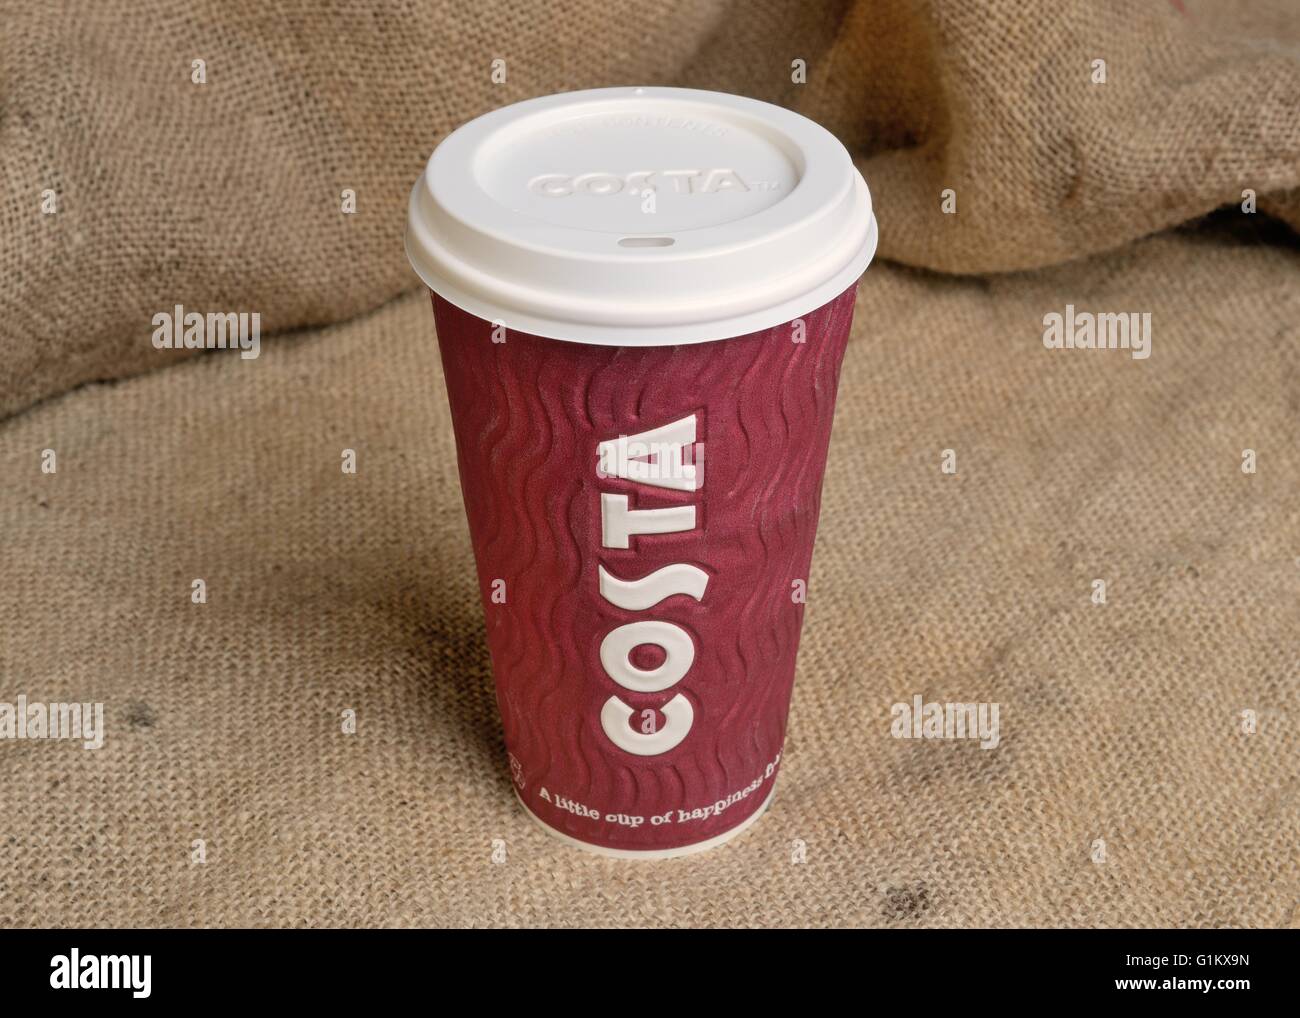 Ein Imbiss Costa Coffee cup auf hessischen Hintergrund Stockfoto